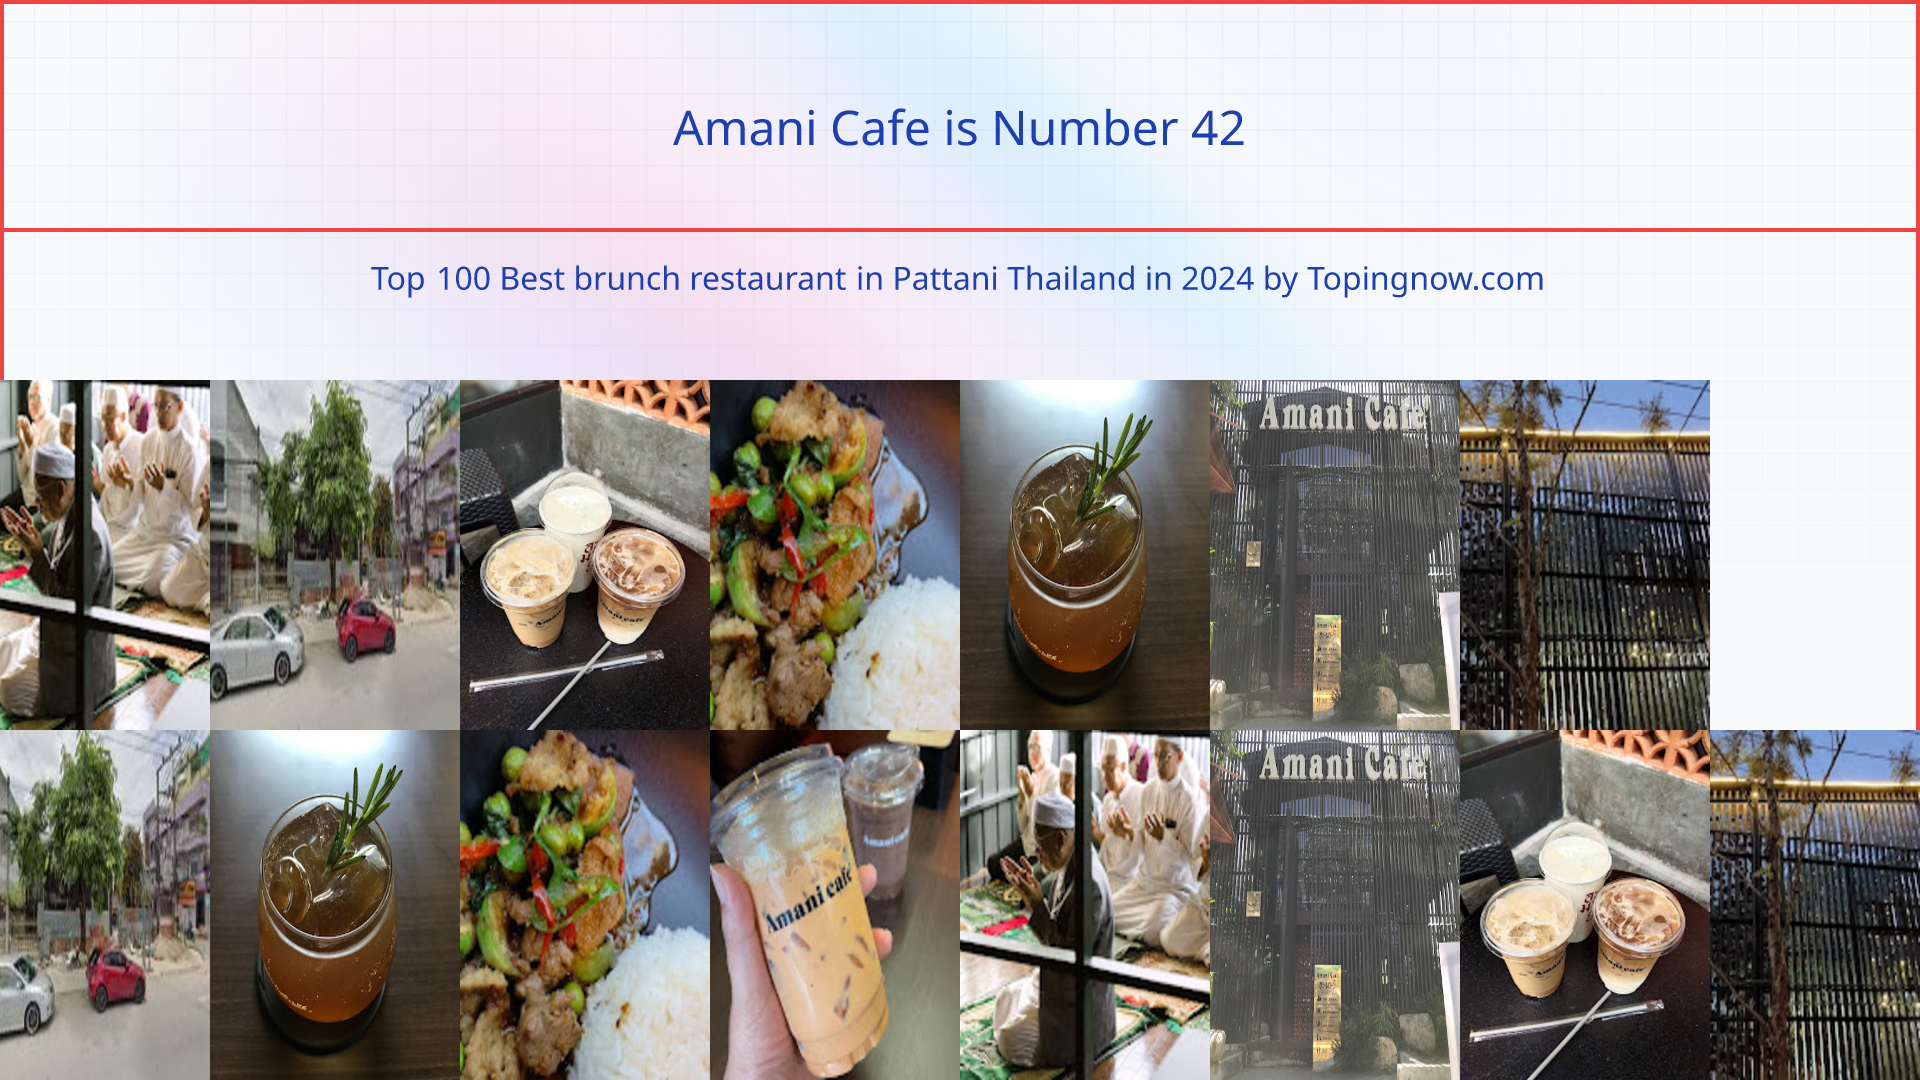 Amani Cafe: Top 100 Best brunch restaurant in Pattani Thailand in 2024